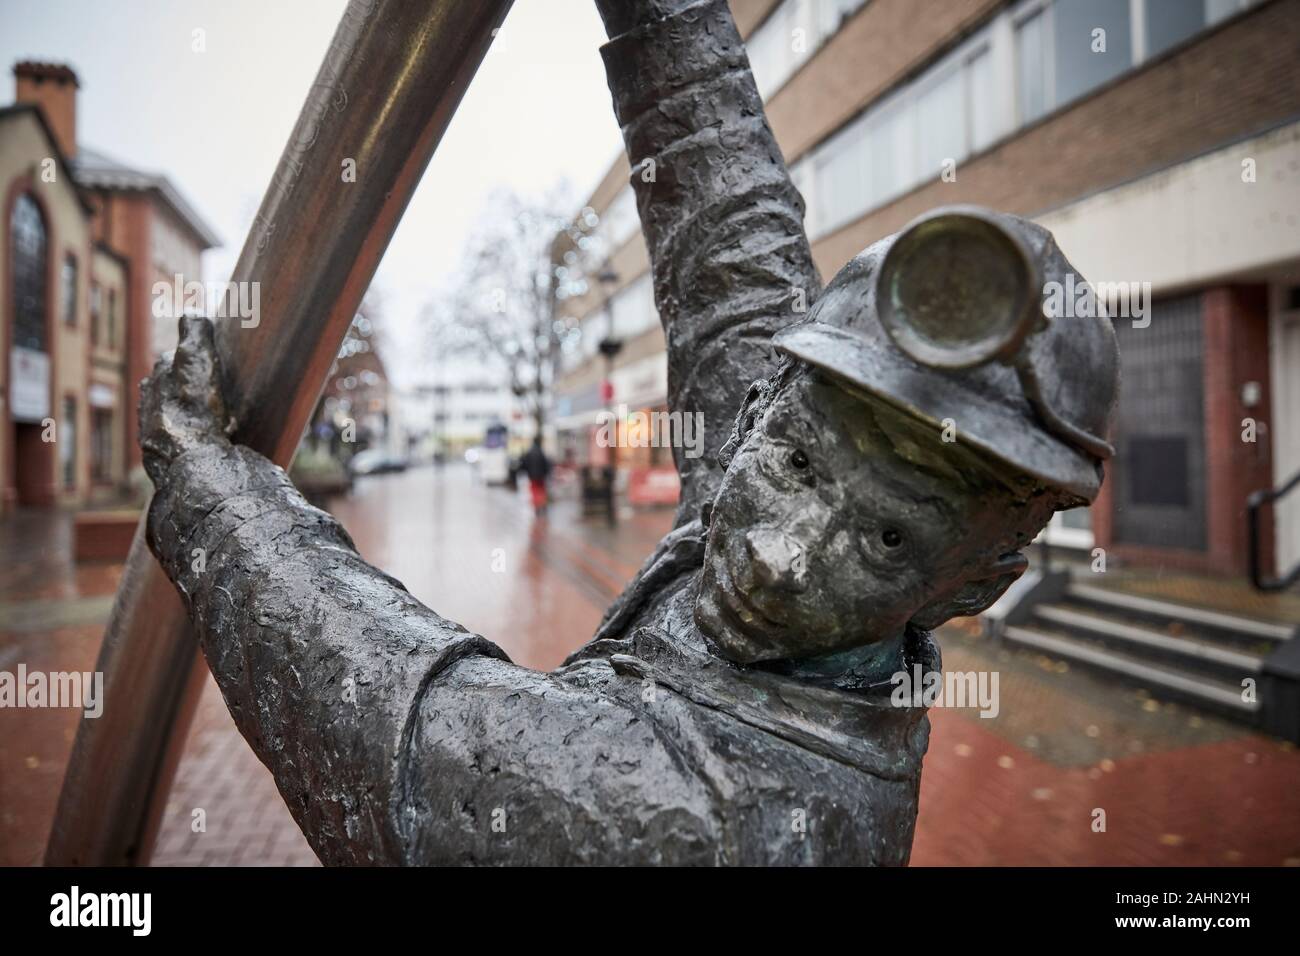 Wrexham au Pays de Galles, de l'Arc la sculpture de David Annand représentant un mineur de charbon Banque D'Images